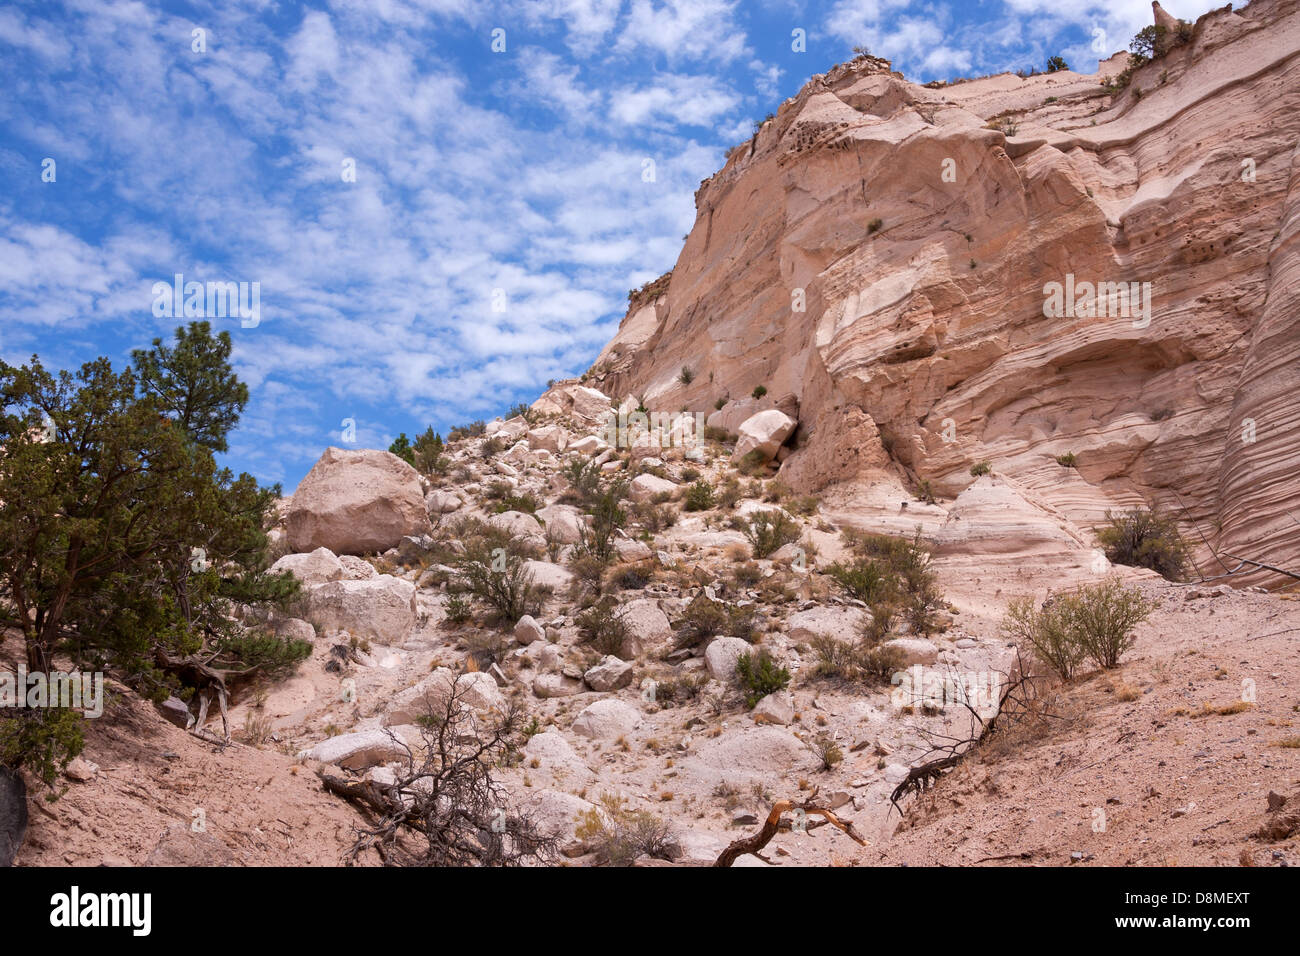 Impresionante formación rocosa en el desierto de Nuevo México Foto de stock